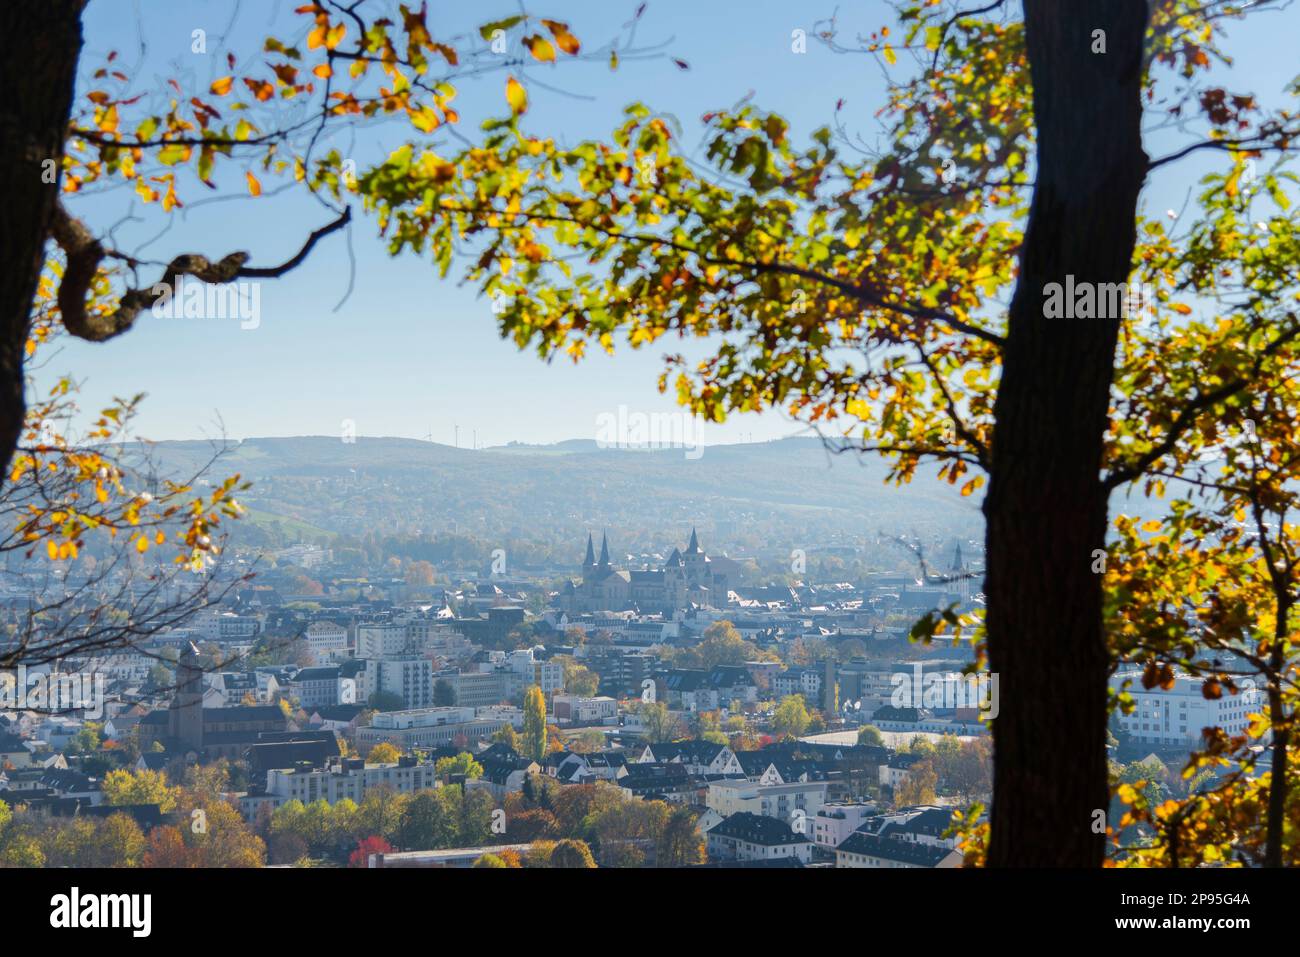 Sehen Sie die farbenfrohen Herbstblätter von Trier mit seinen berühmten Gebäuden wie der Basilika und der Kathedrale. Stockfoto